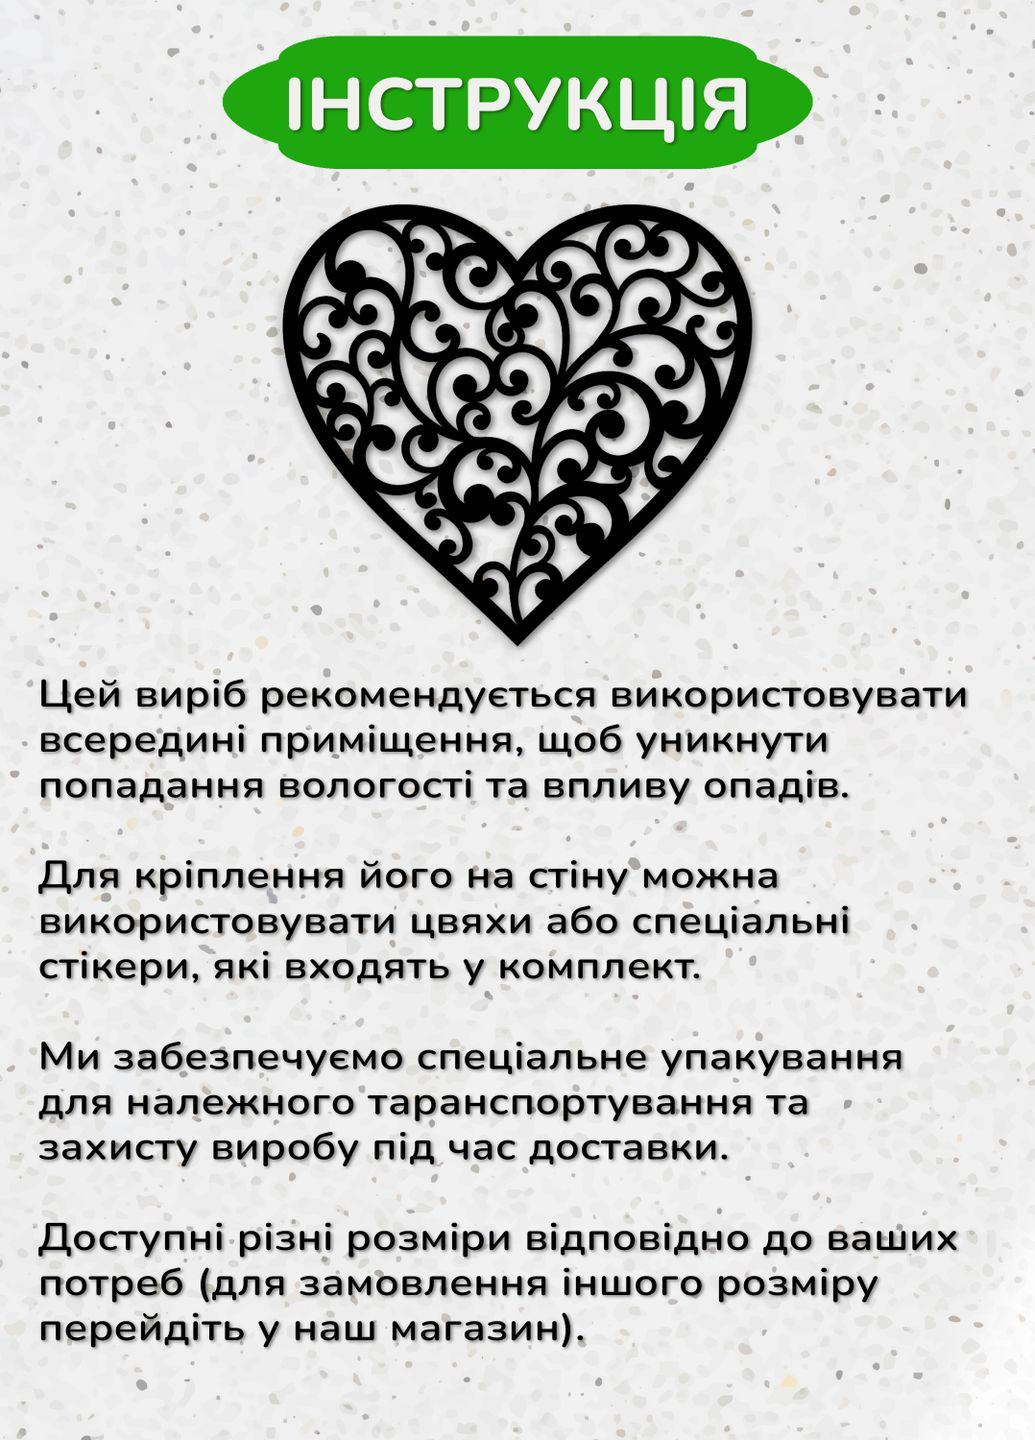 Настенный декор для дома, картина лофт "Любящее сердце", декоративное панно 30х33 см Woodyard (292114098)